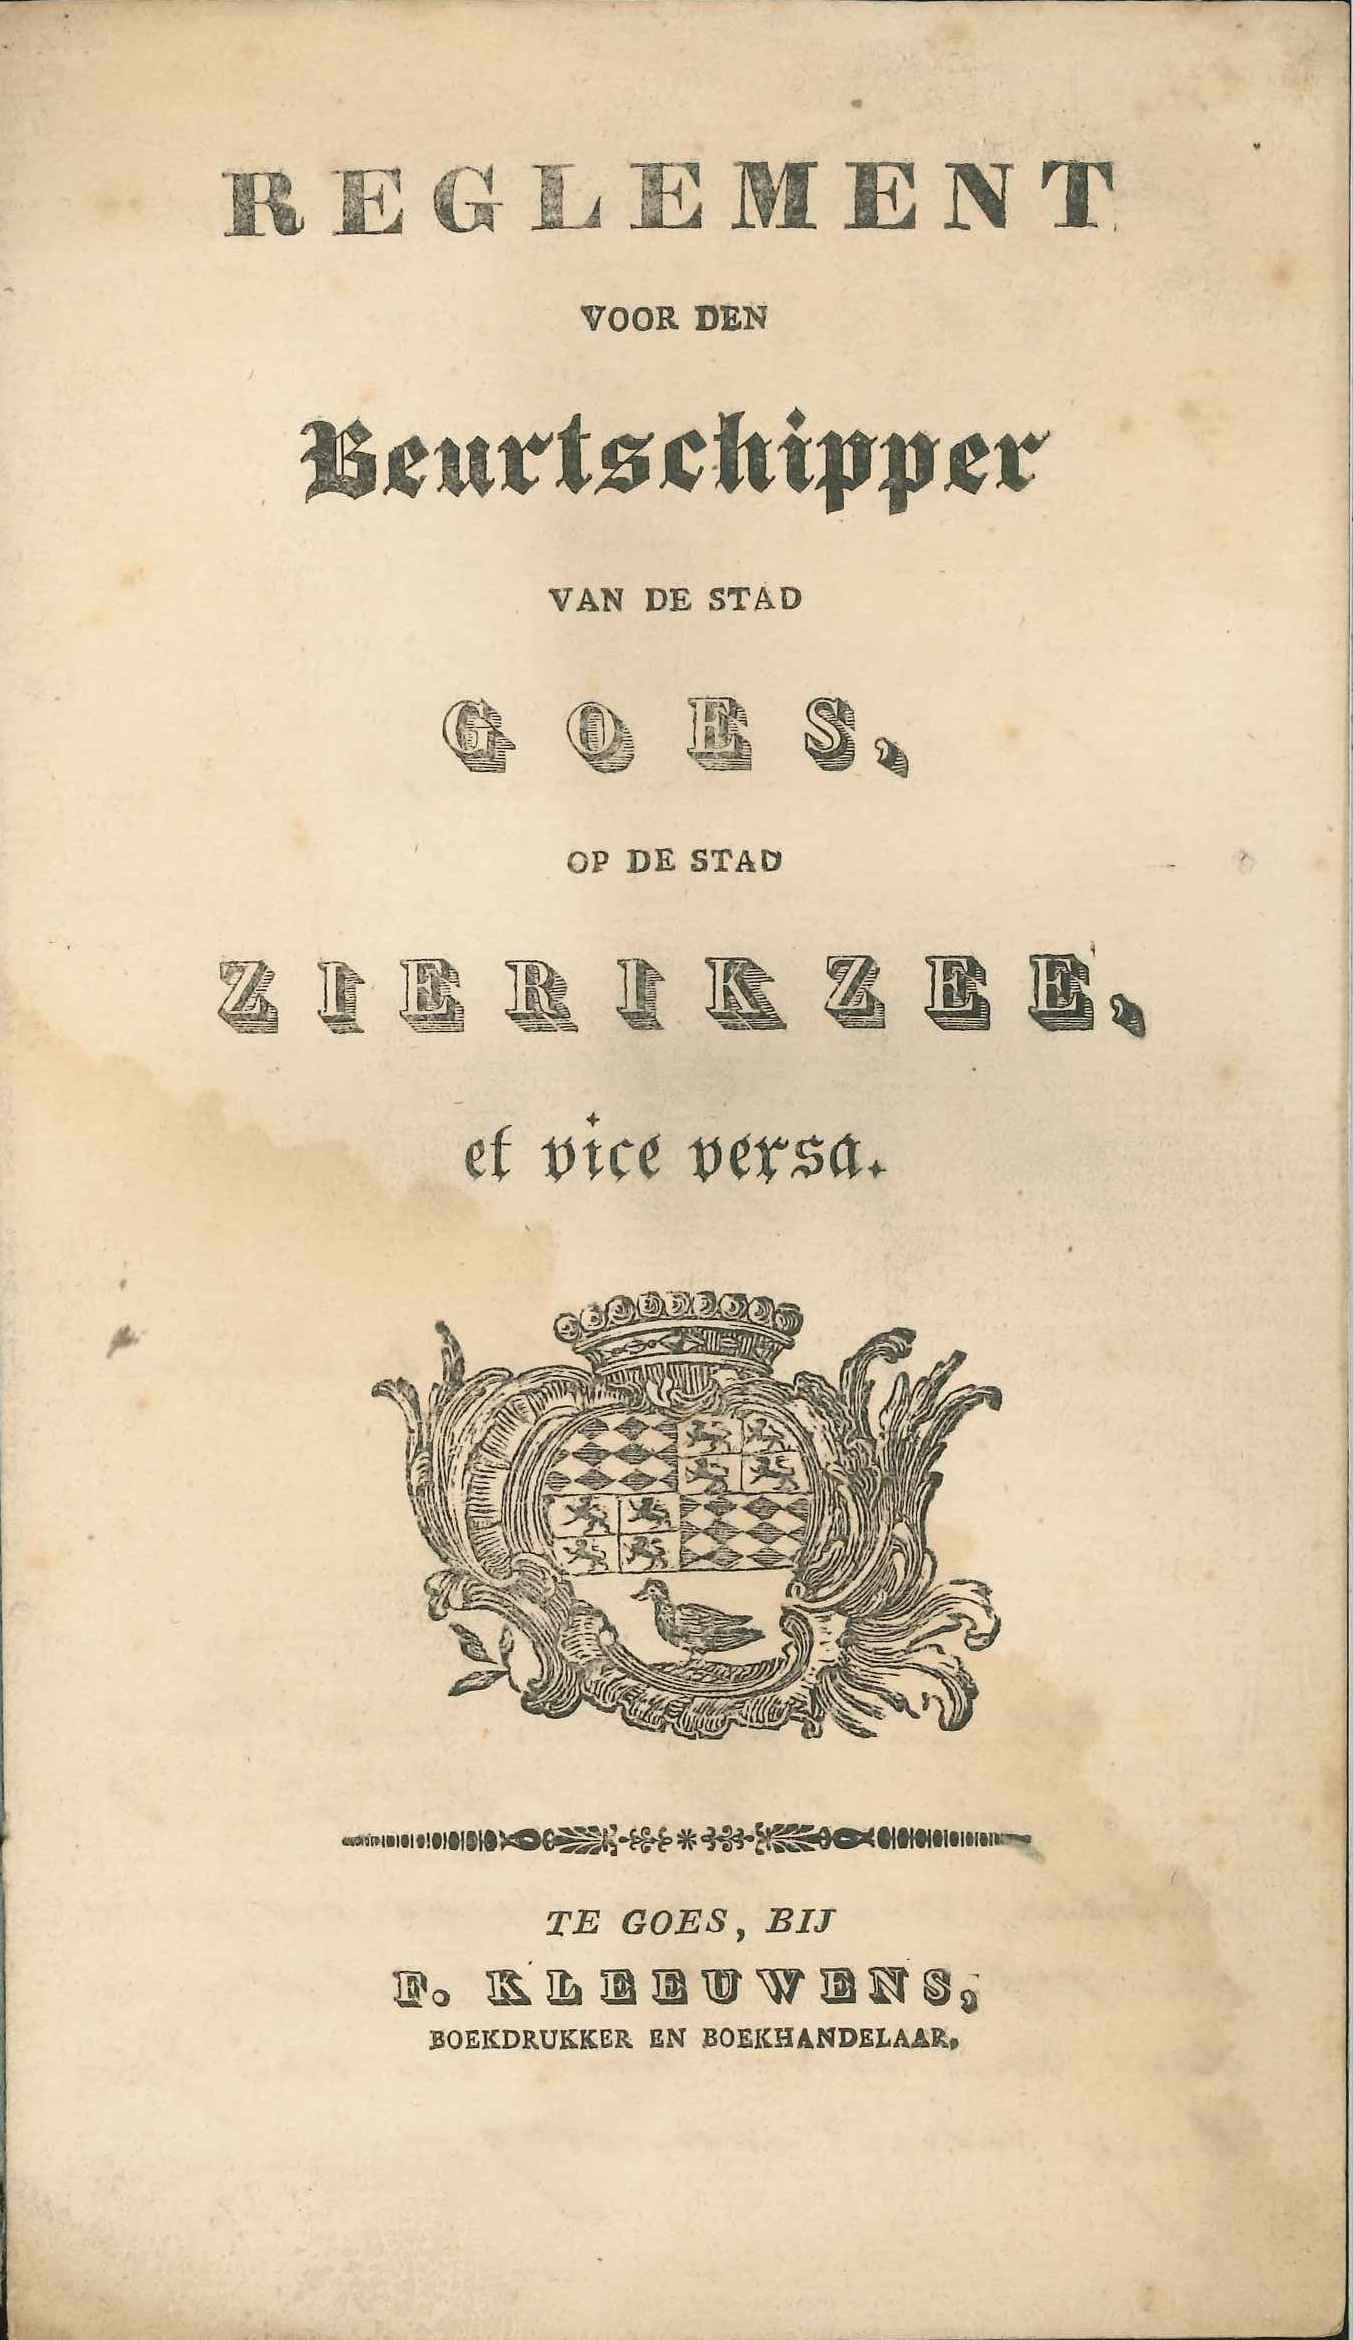 Reglement voor de beurtschipper van Goes op Zierikzee, 1831. GAG.ASG.inv.nr. 2442.